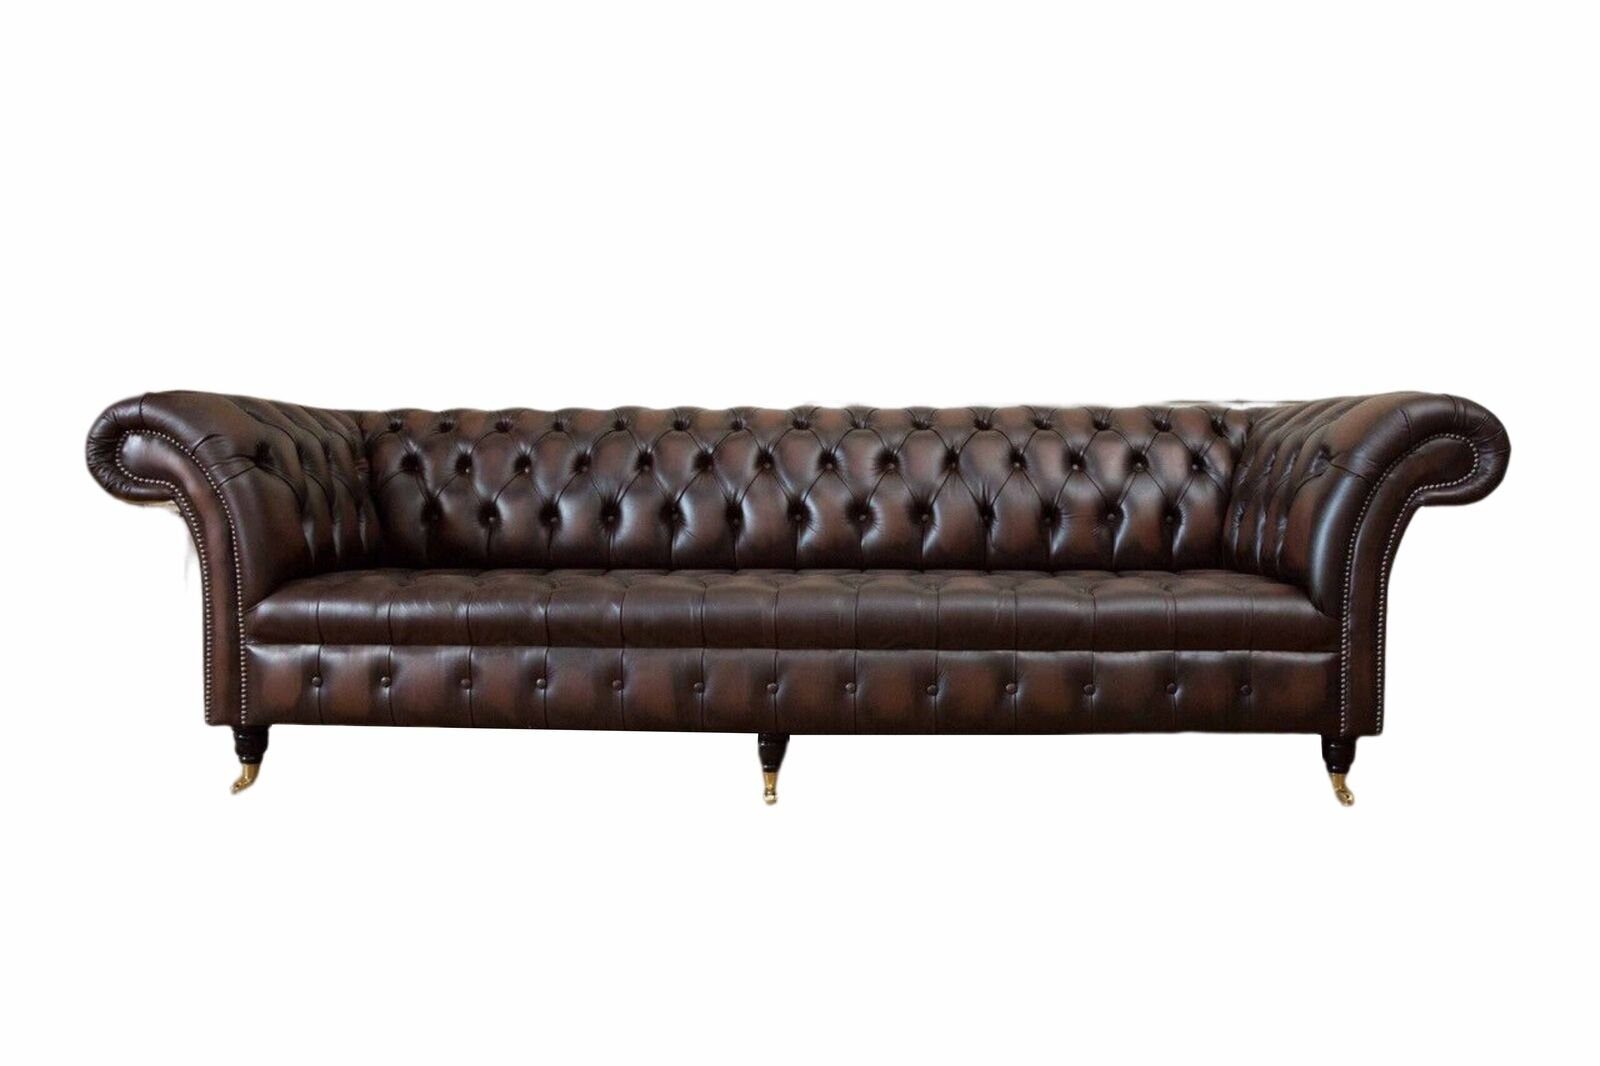 JVmoebel Sofa Ledersofa Sofa 4 Sitzer Couch Luxus Klassische Leder Chesterfield, Made In Europe